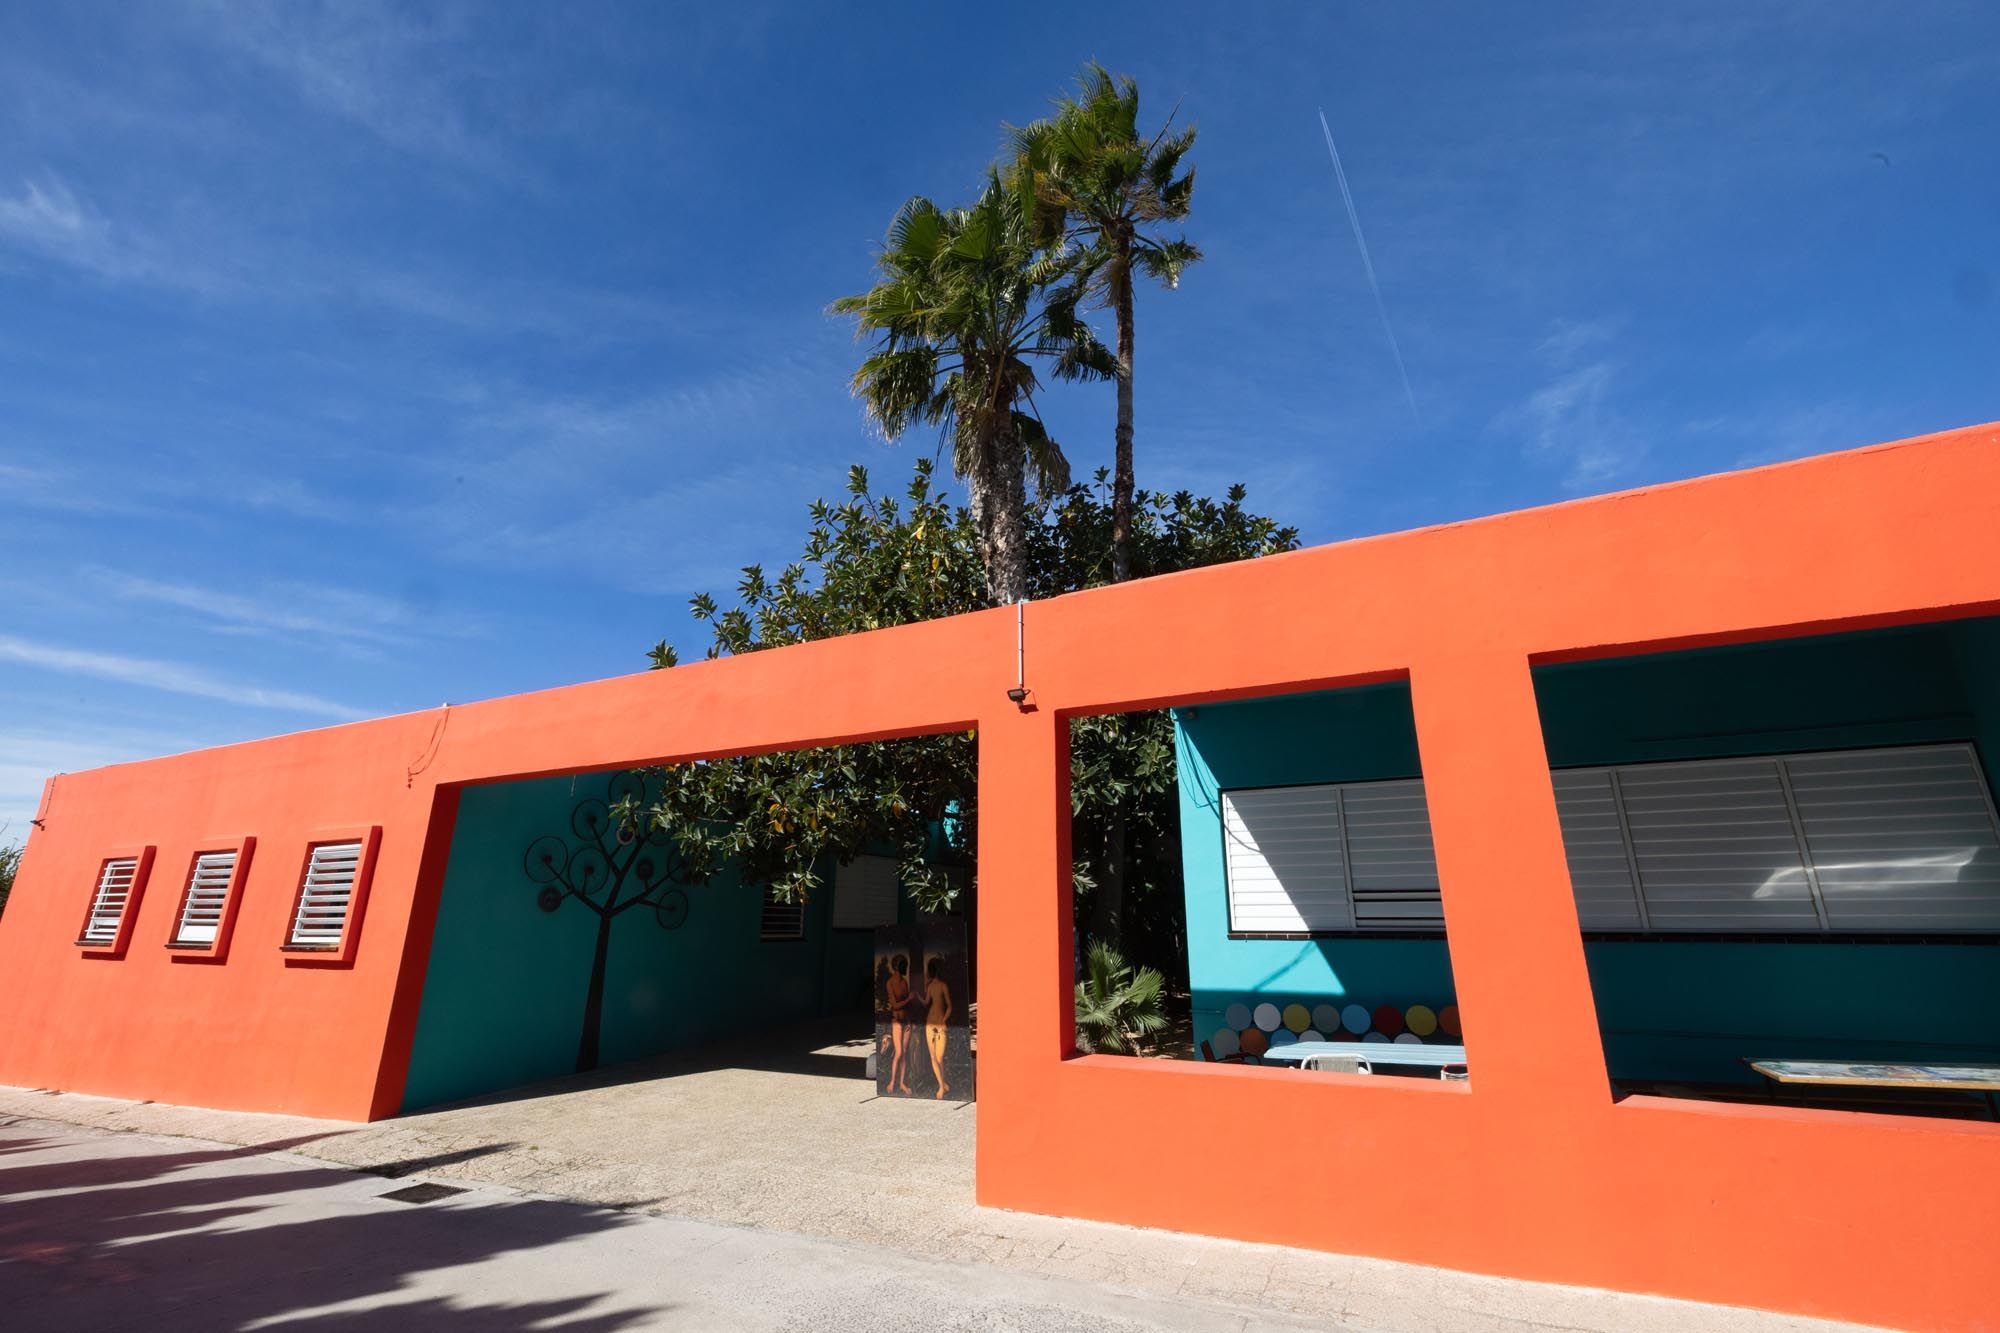 Galería de imágenes de las puertas abiertas de la Escola d'Art d'Eivissa